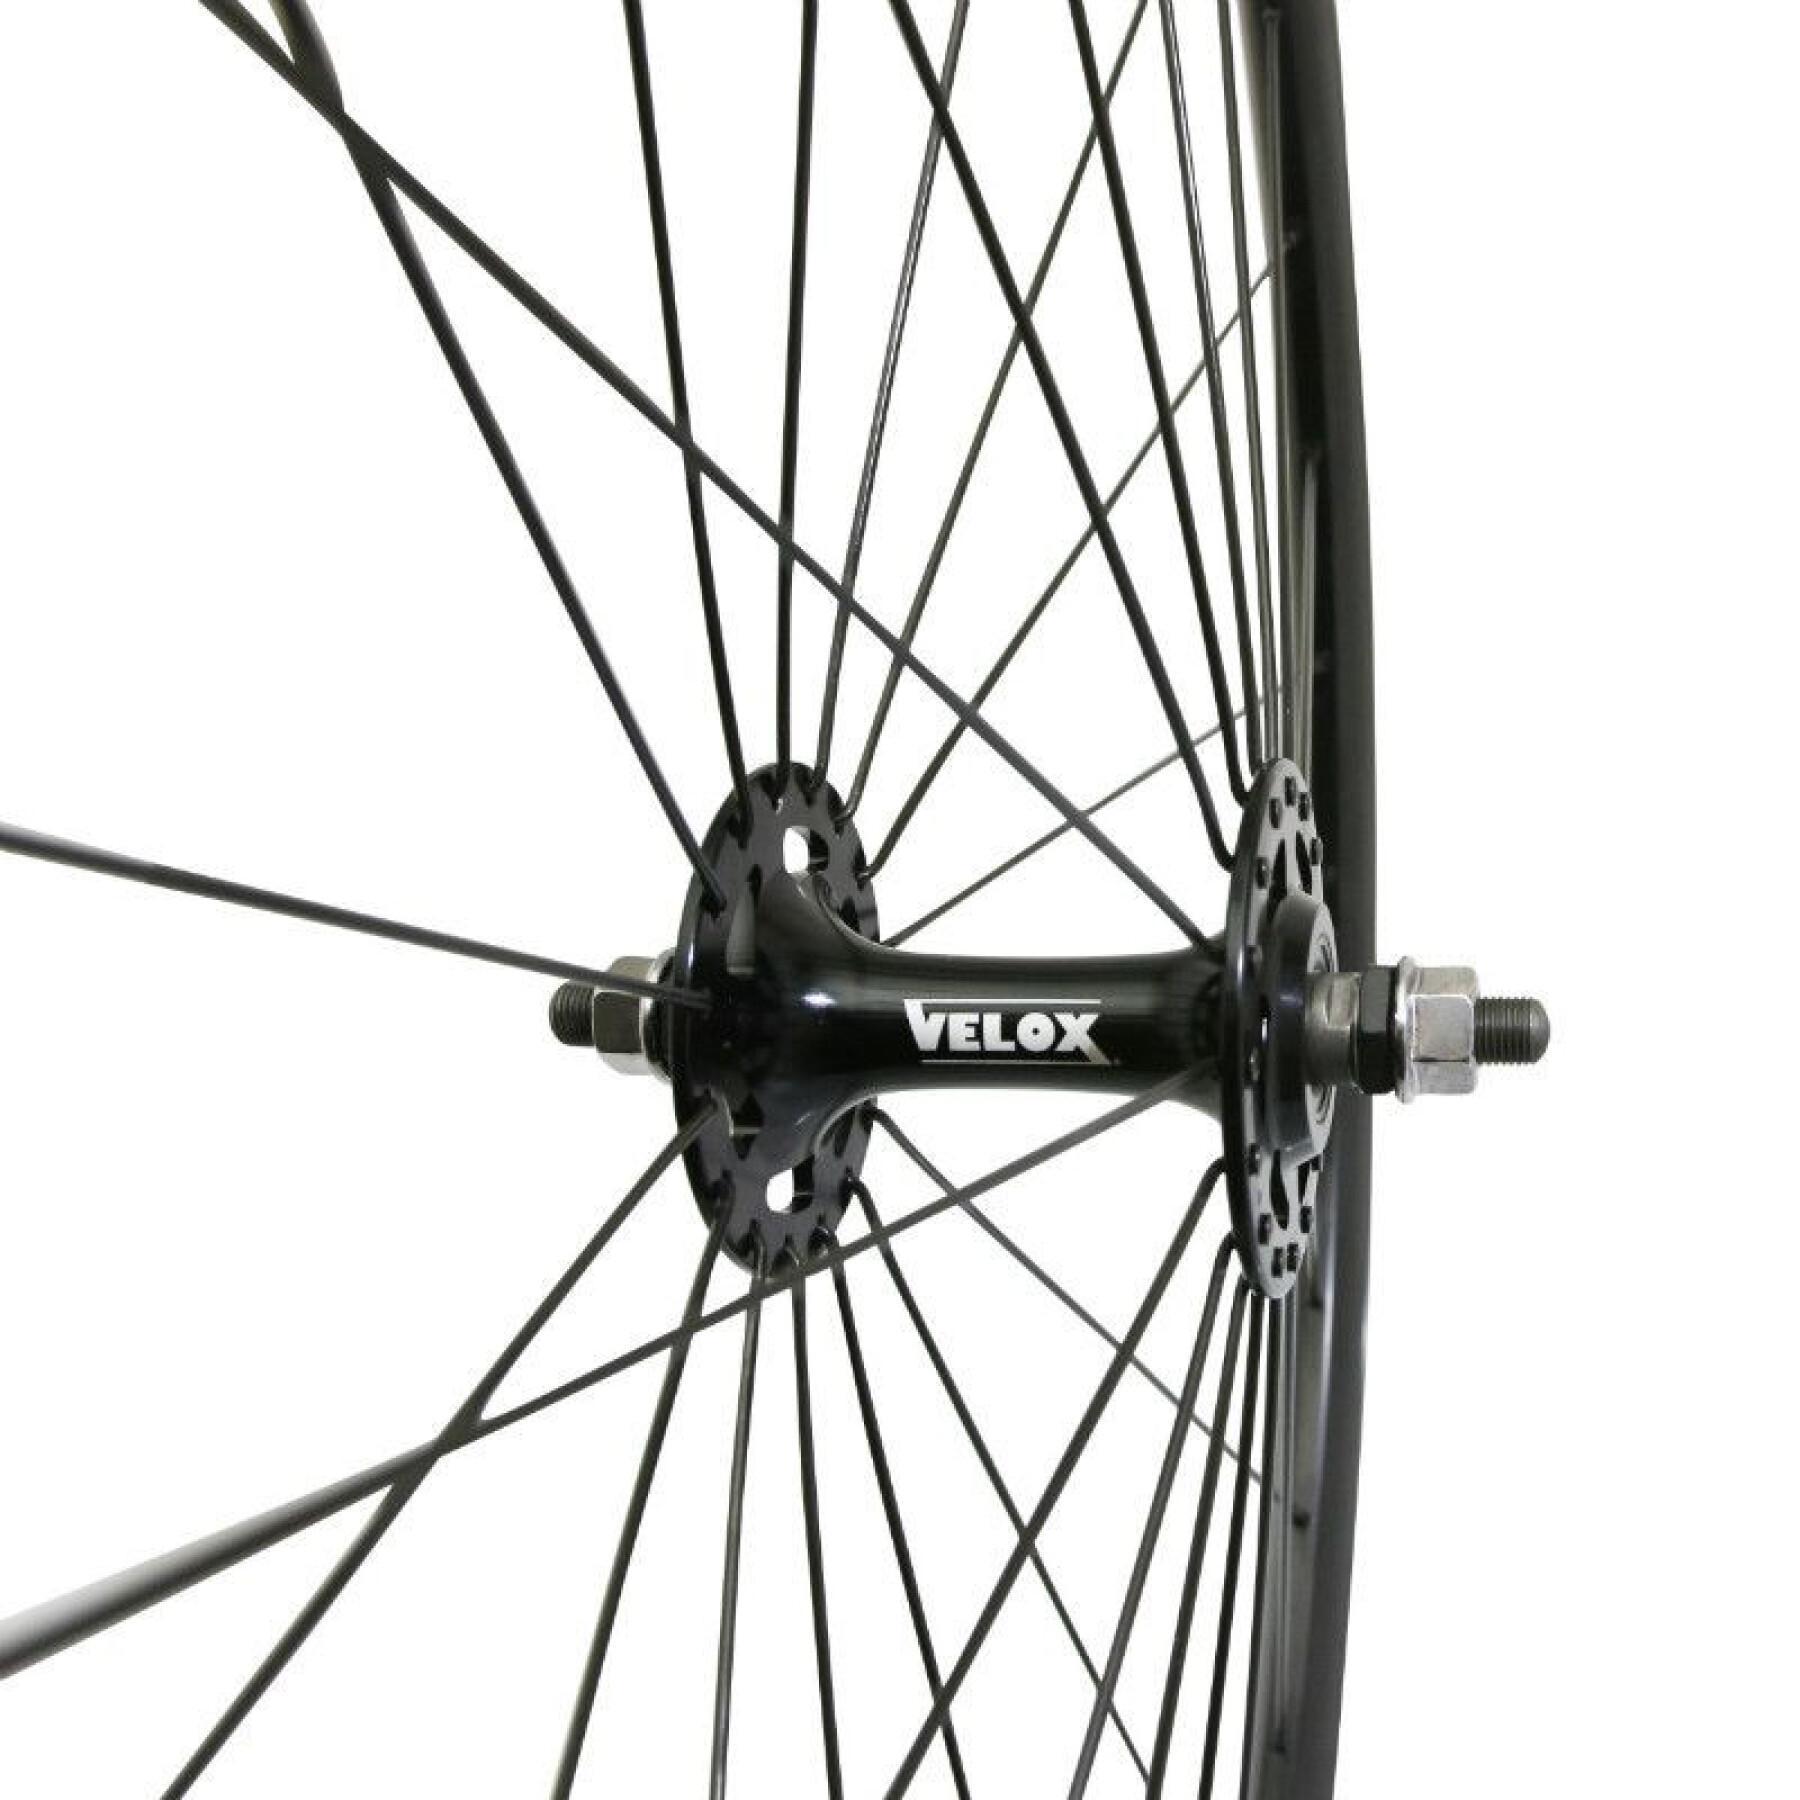 Främre fixiehjul för landsvägscykel P2R